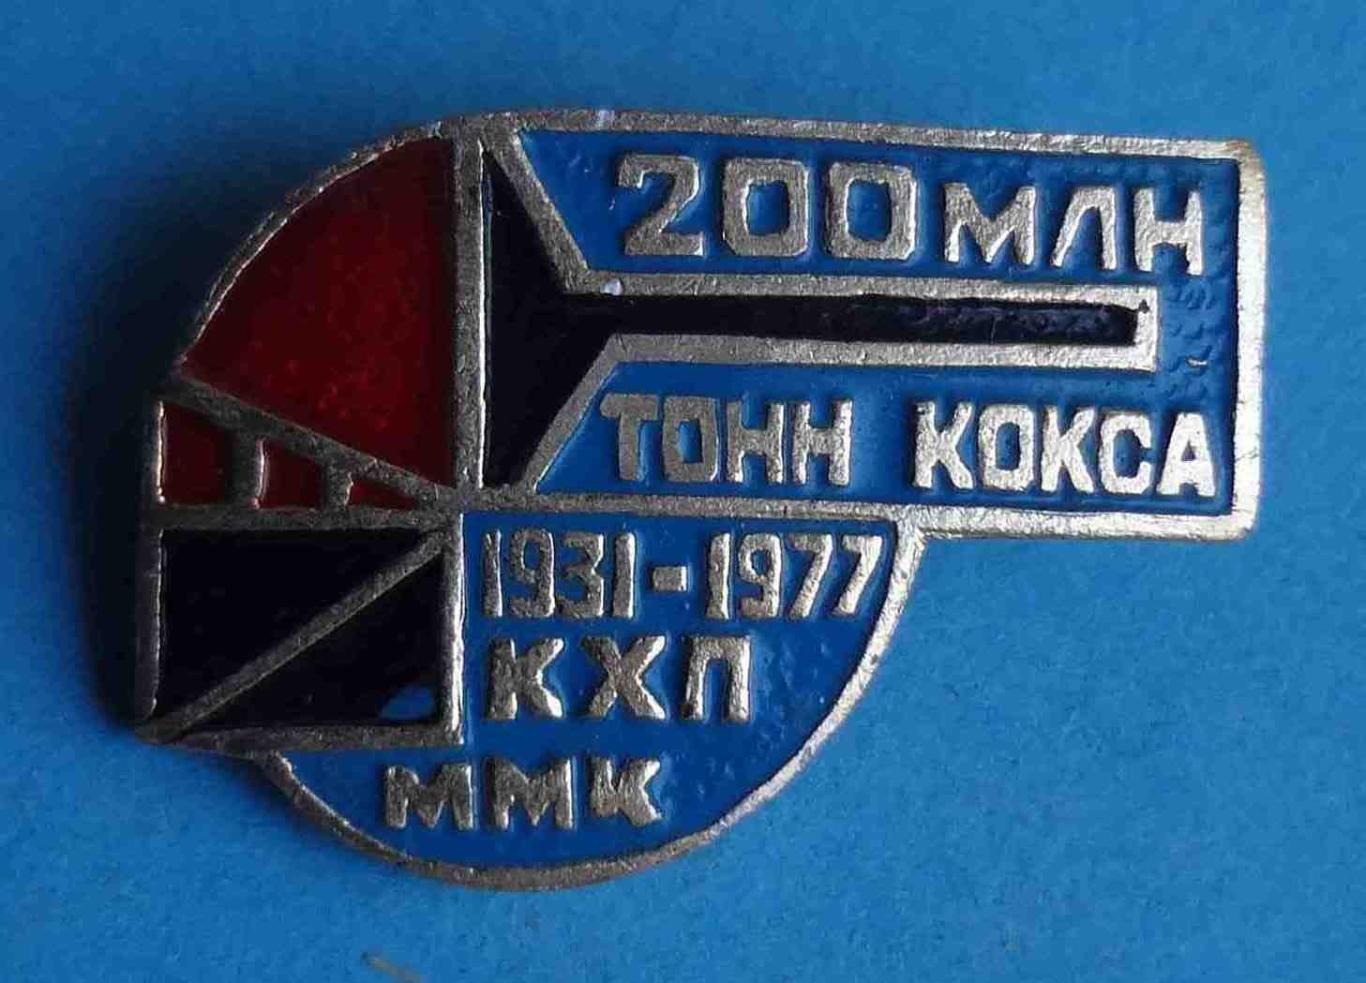 200 млн тонн кокса 1931-1977 КХП ММК Коксохимическое производство Магнитогорск 2